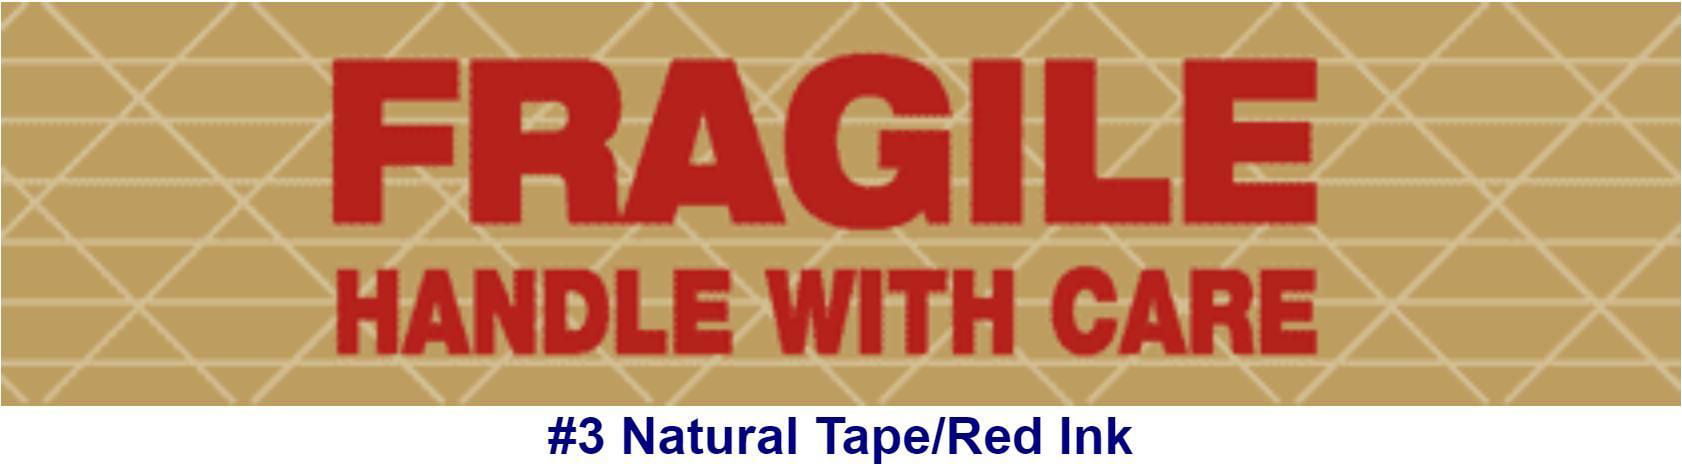 Gummed Tape*reinforced*10 Rolls X 450 FT 70mm Wide Printed Fragile Handle W Care for sale online 